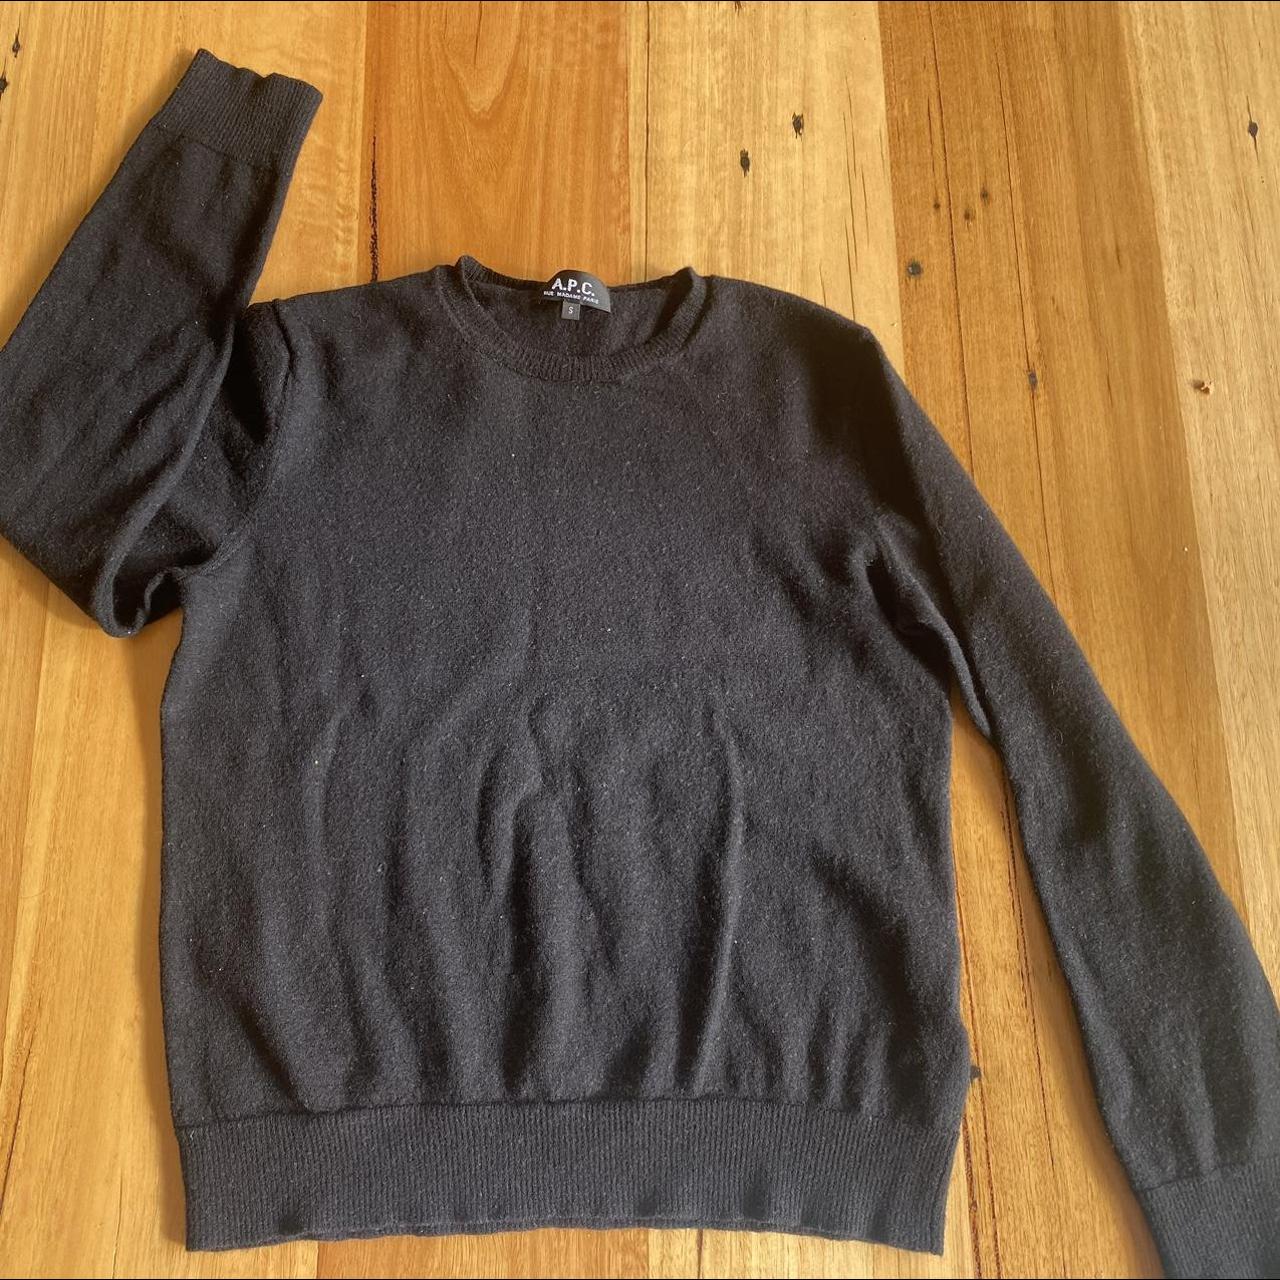 A.P.C black jumper. 100% merino wool. Small fit.... - Depop